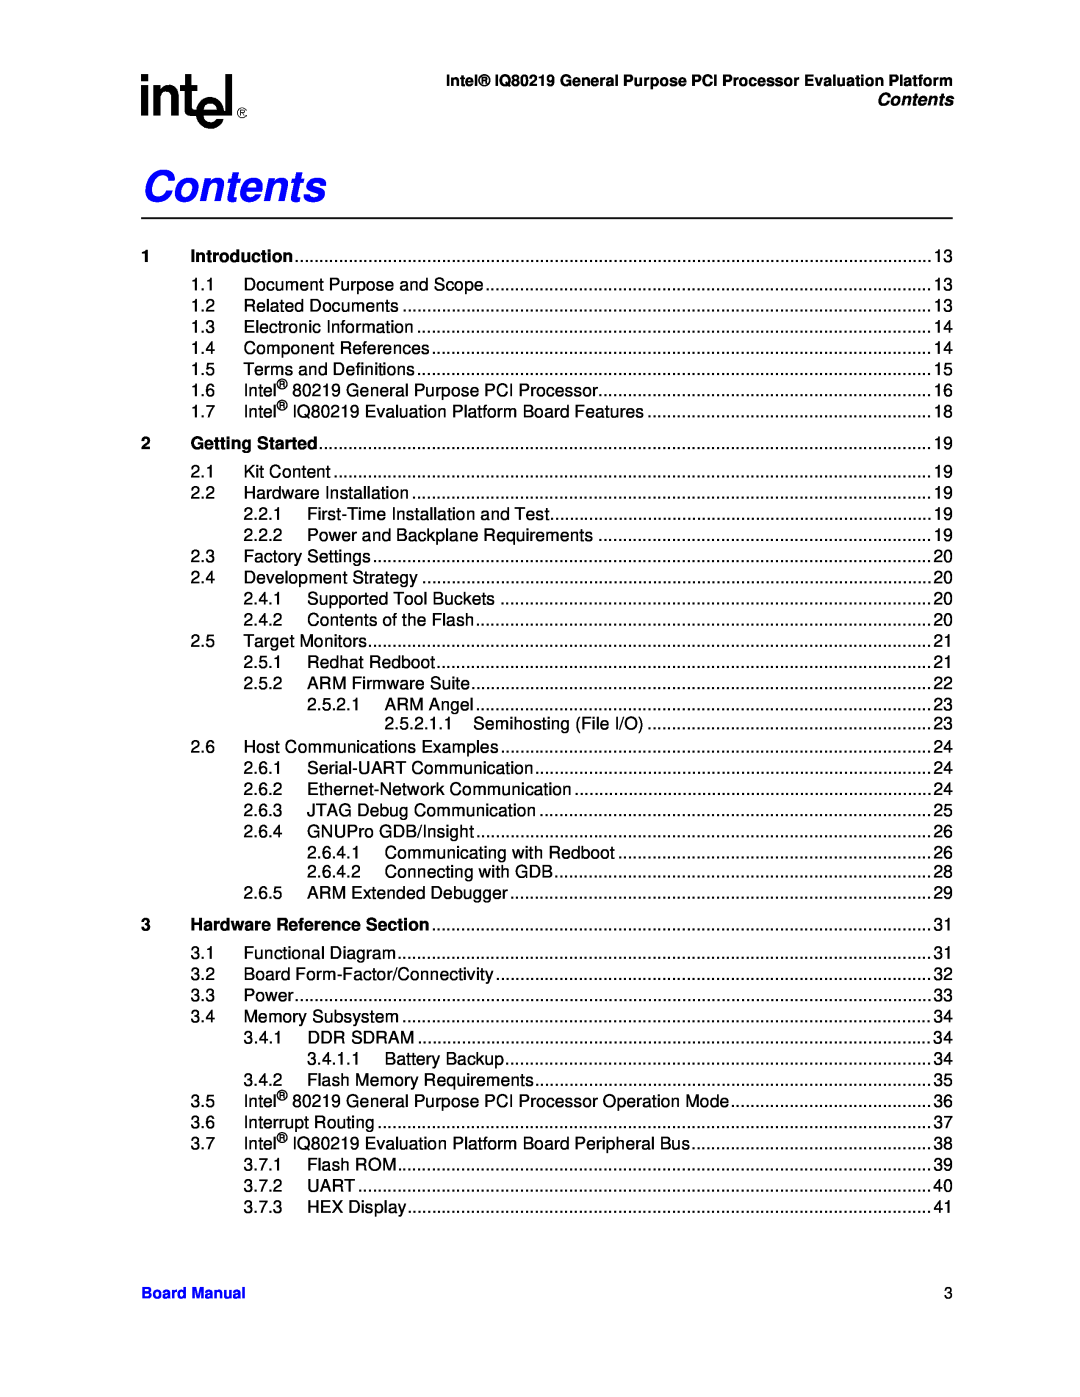 Intel IQ80219 manual Contents 